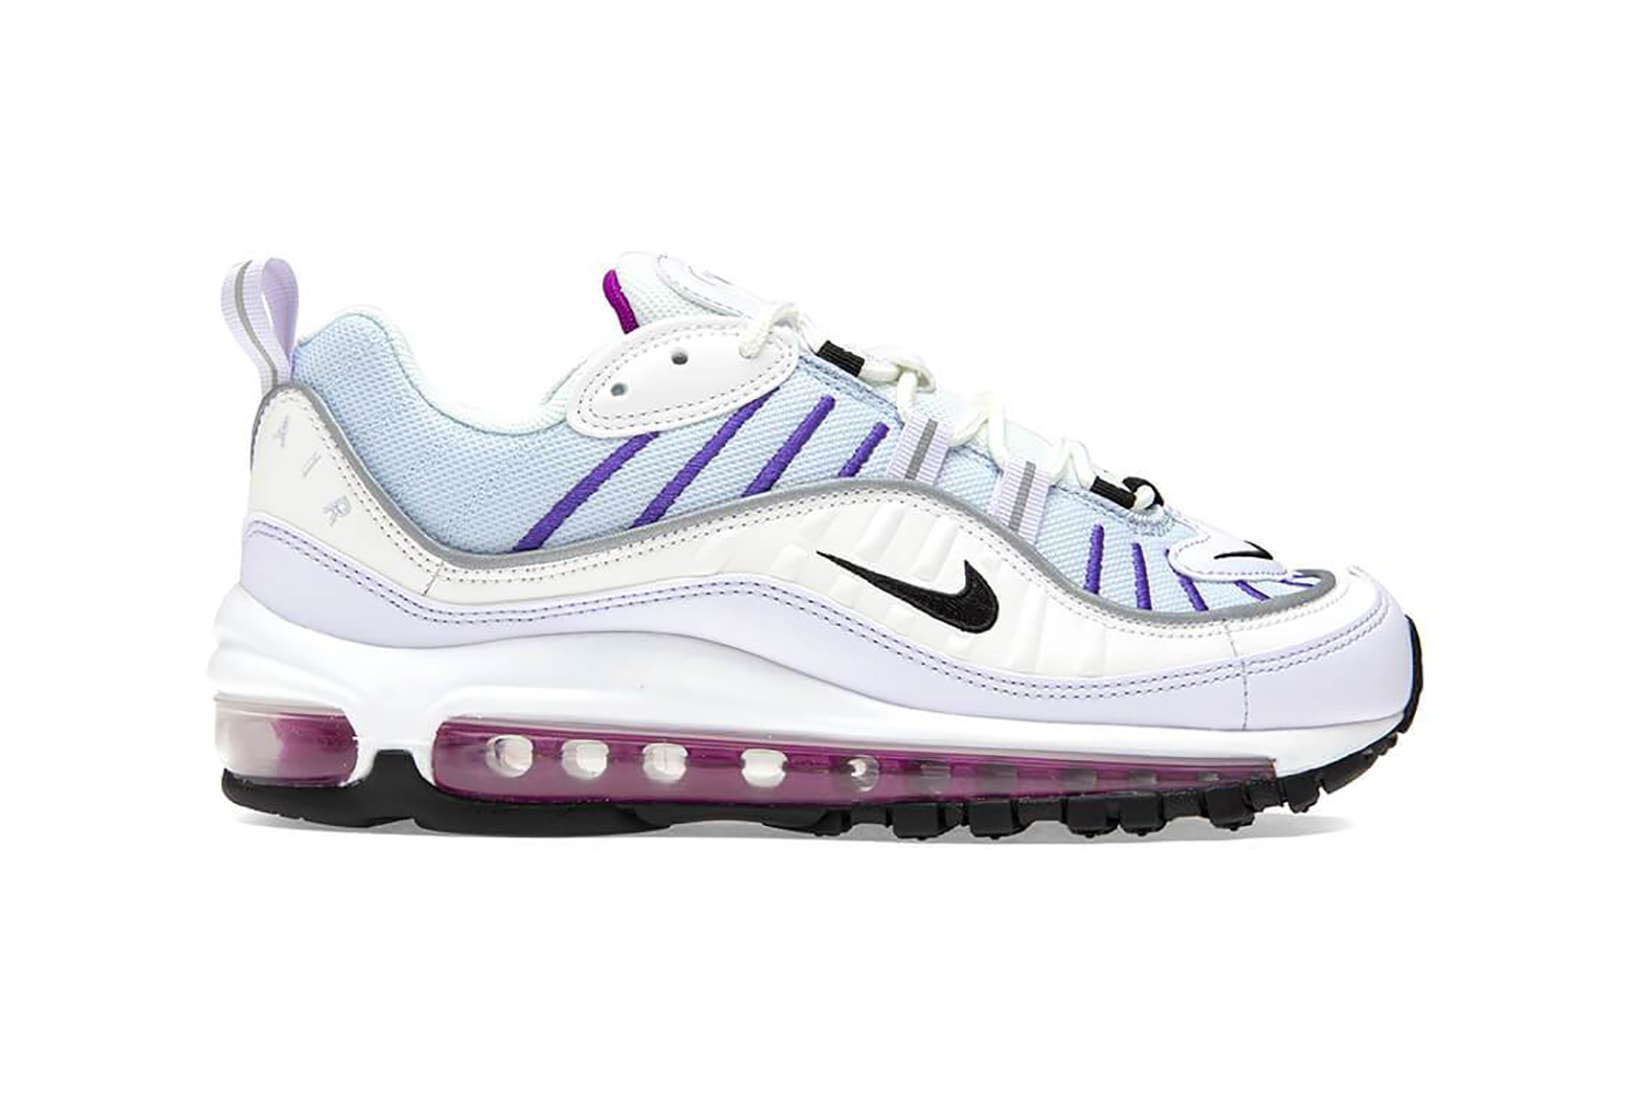 nike air max 98 womens sneakers football grey white purple pink footwear shoes sneakerhead